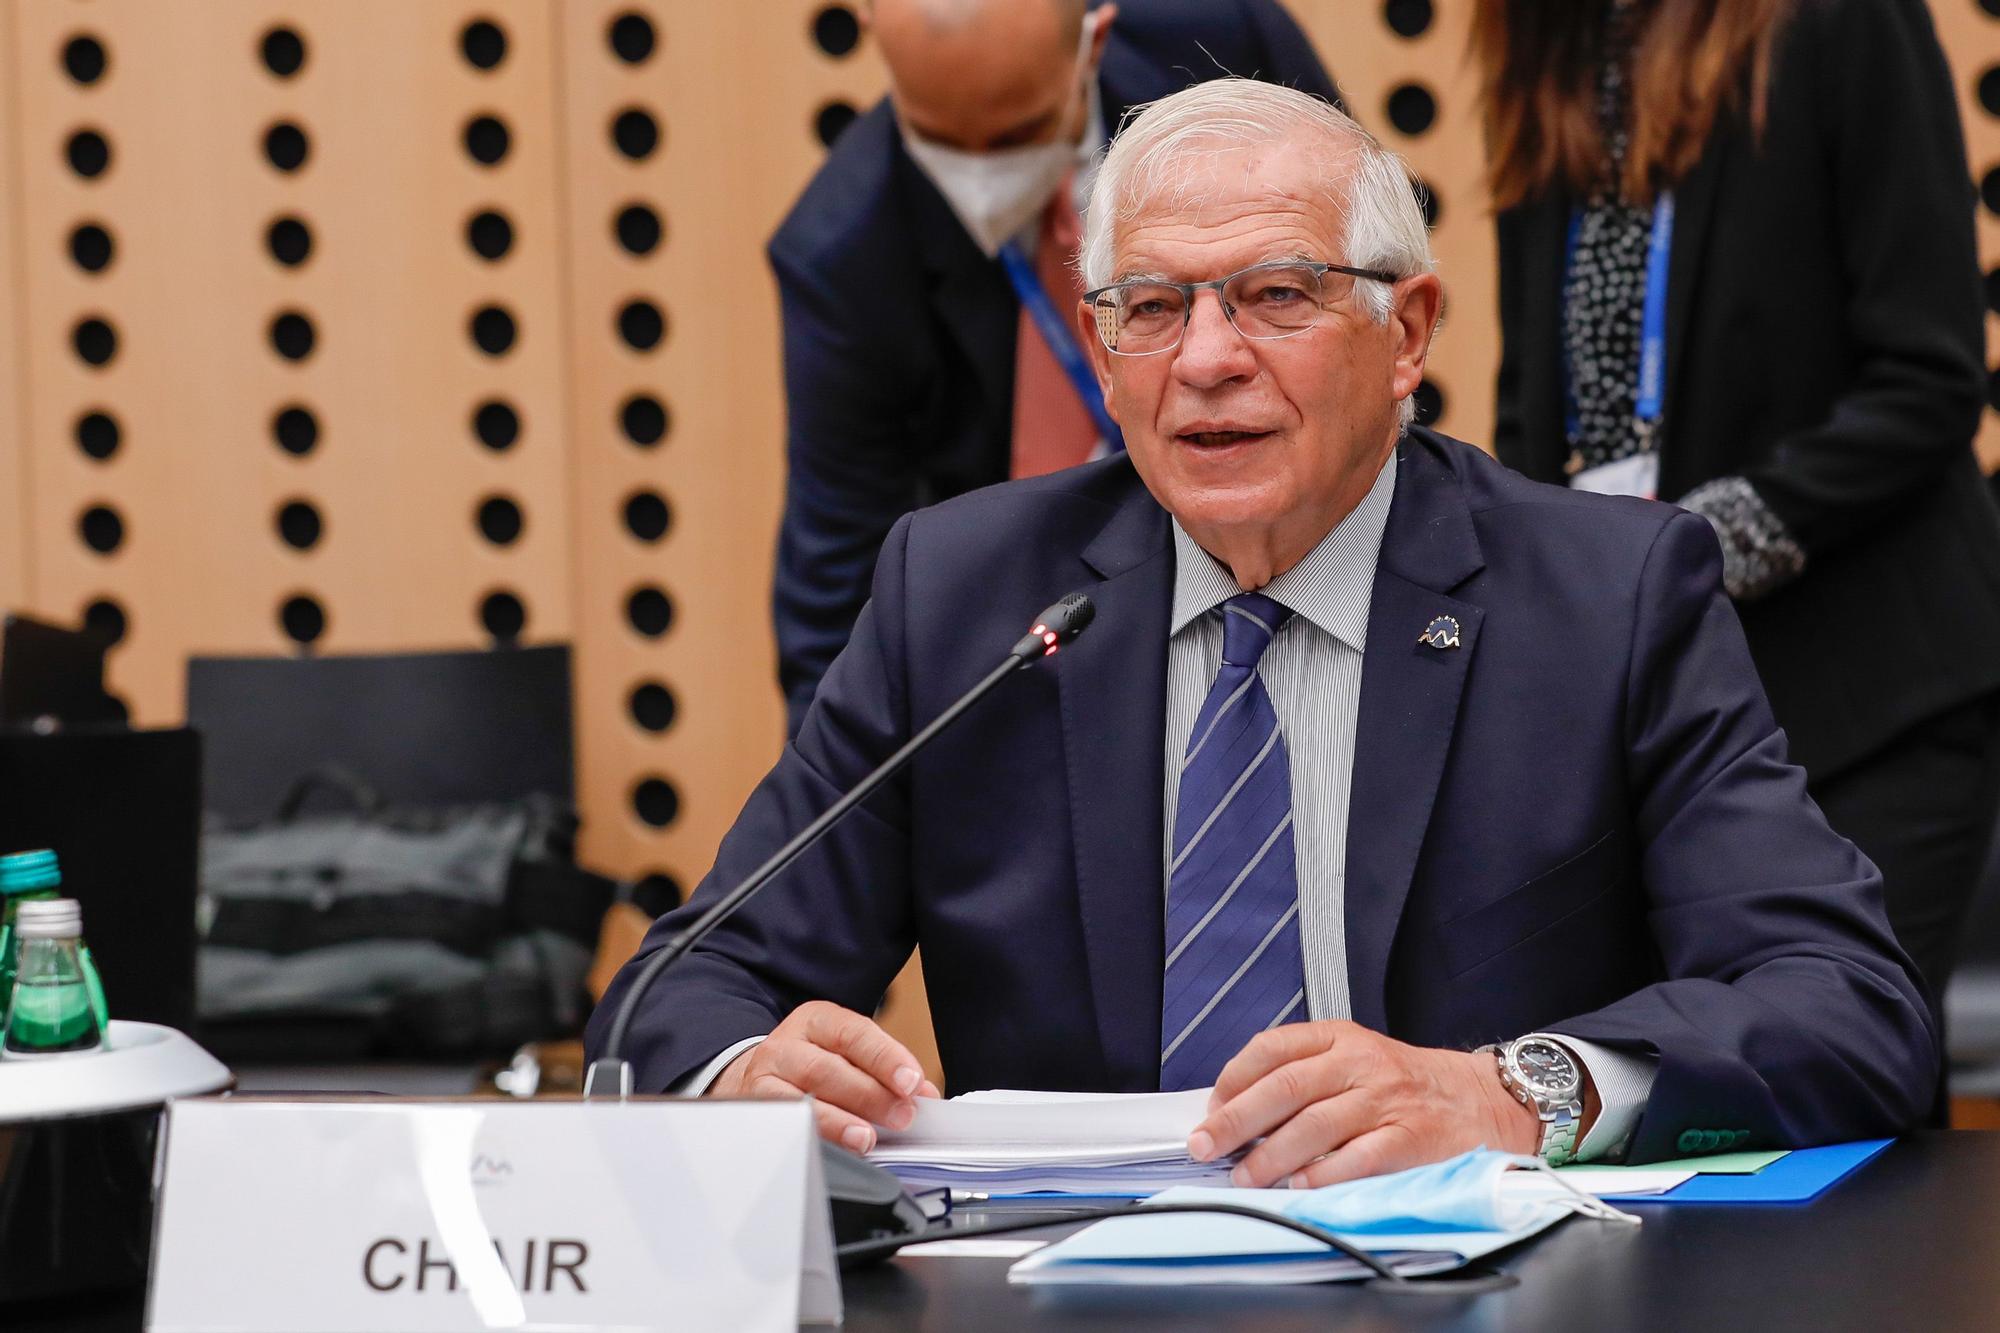 Josep Borrell, Alto Representante de la UE para Asuntos Exteriores y Política de Seguridad, interviene durante la reunión informal de ministros de Defensa de la UE en Kranj, Eslovenia, el pasado mes de septiembre.